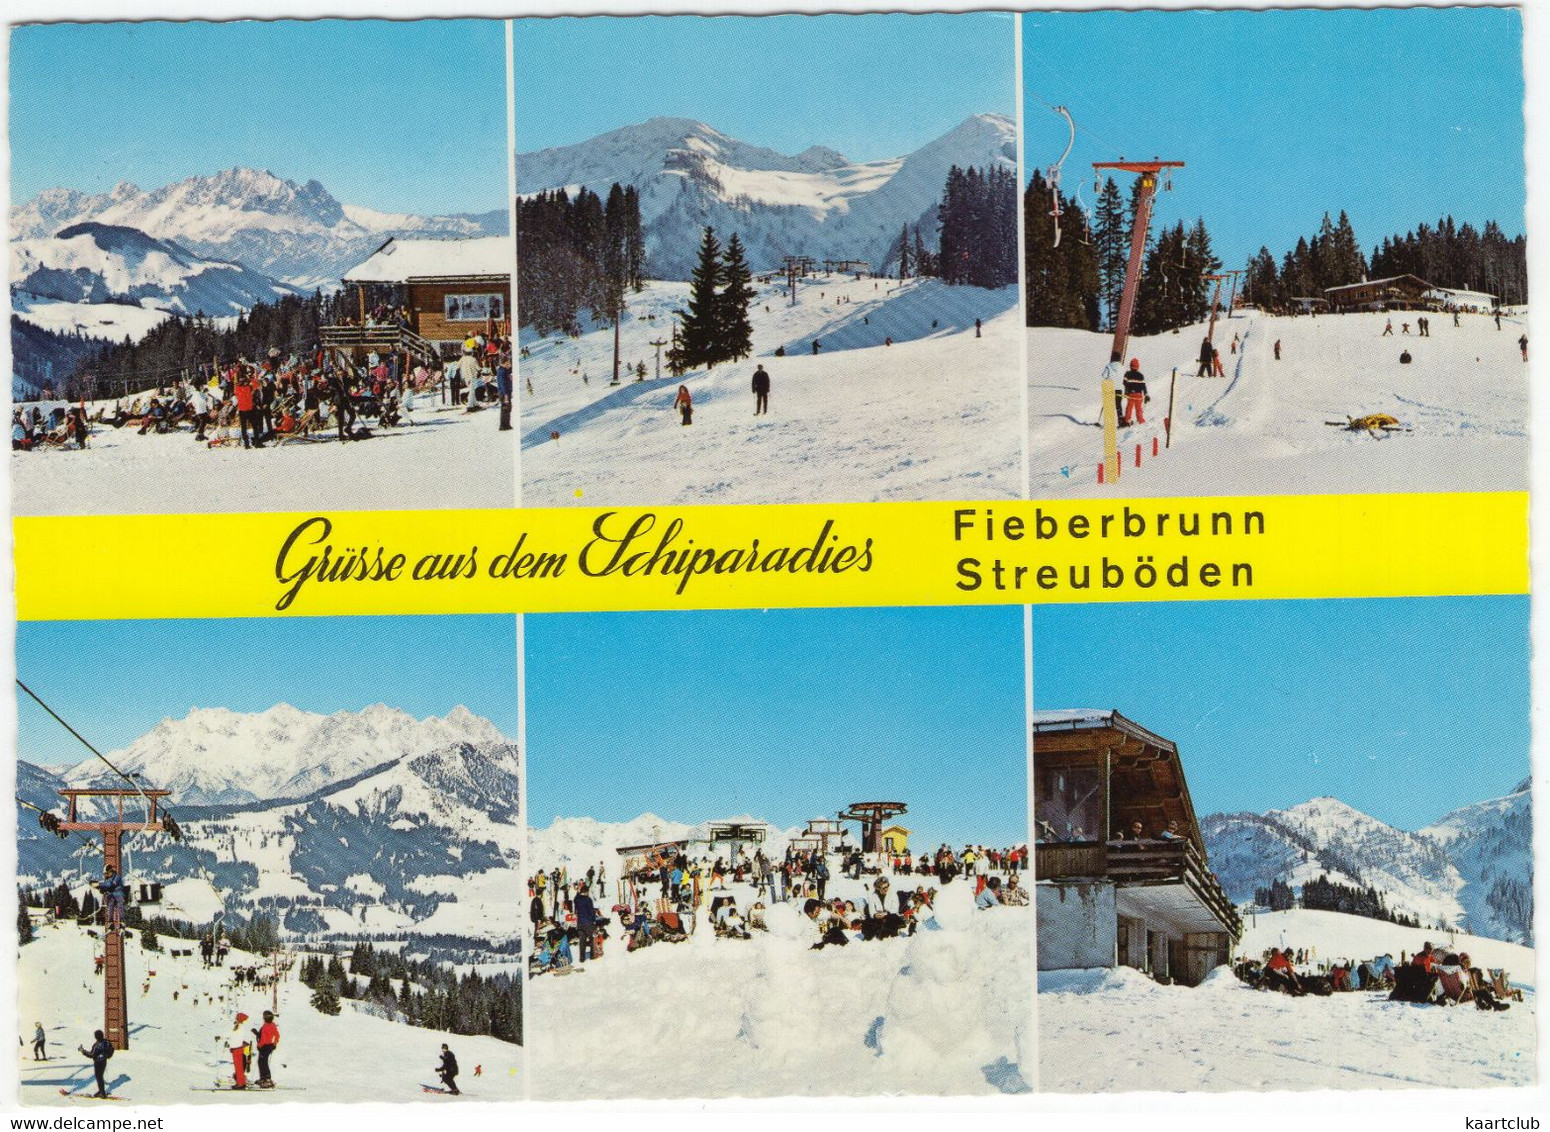 Schiparadies Fieberbrunn Streuböden 1202 M - Gasthof, Abfahrt, Babylift, Doppelsesselbahn, Bergstation - Tirol - Fieberbrunn